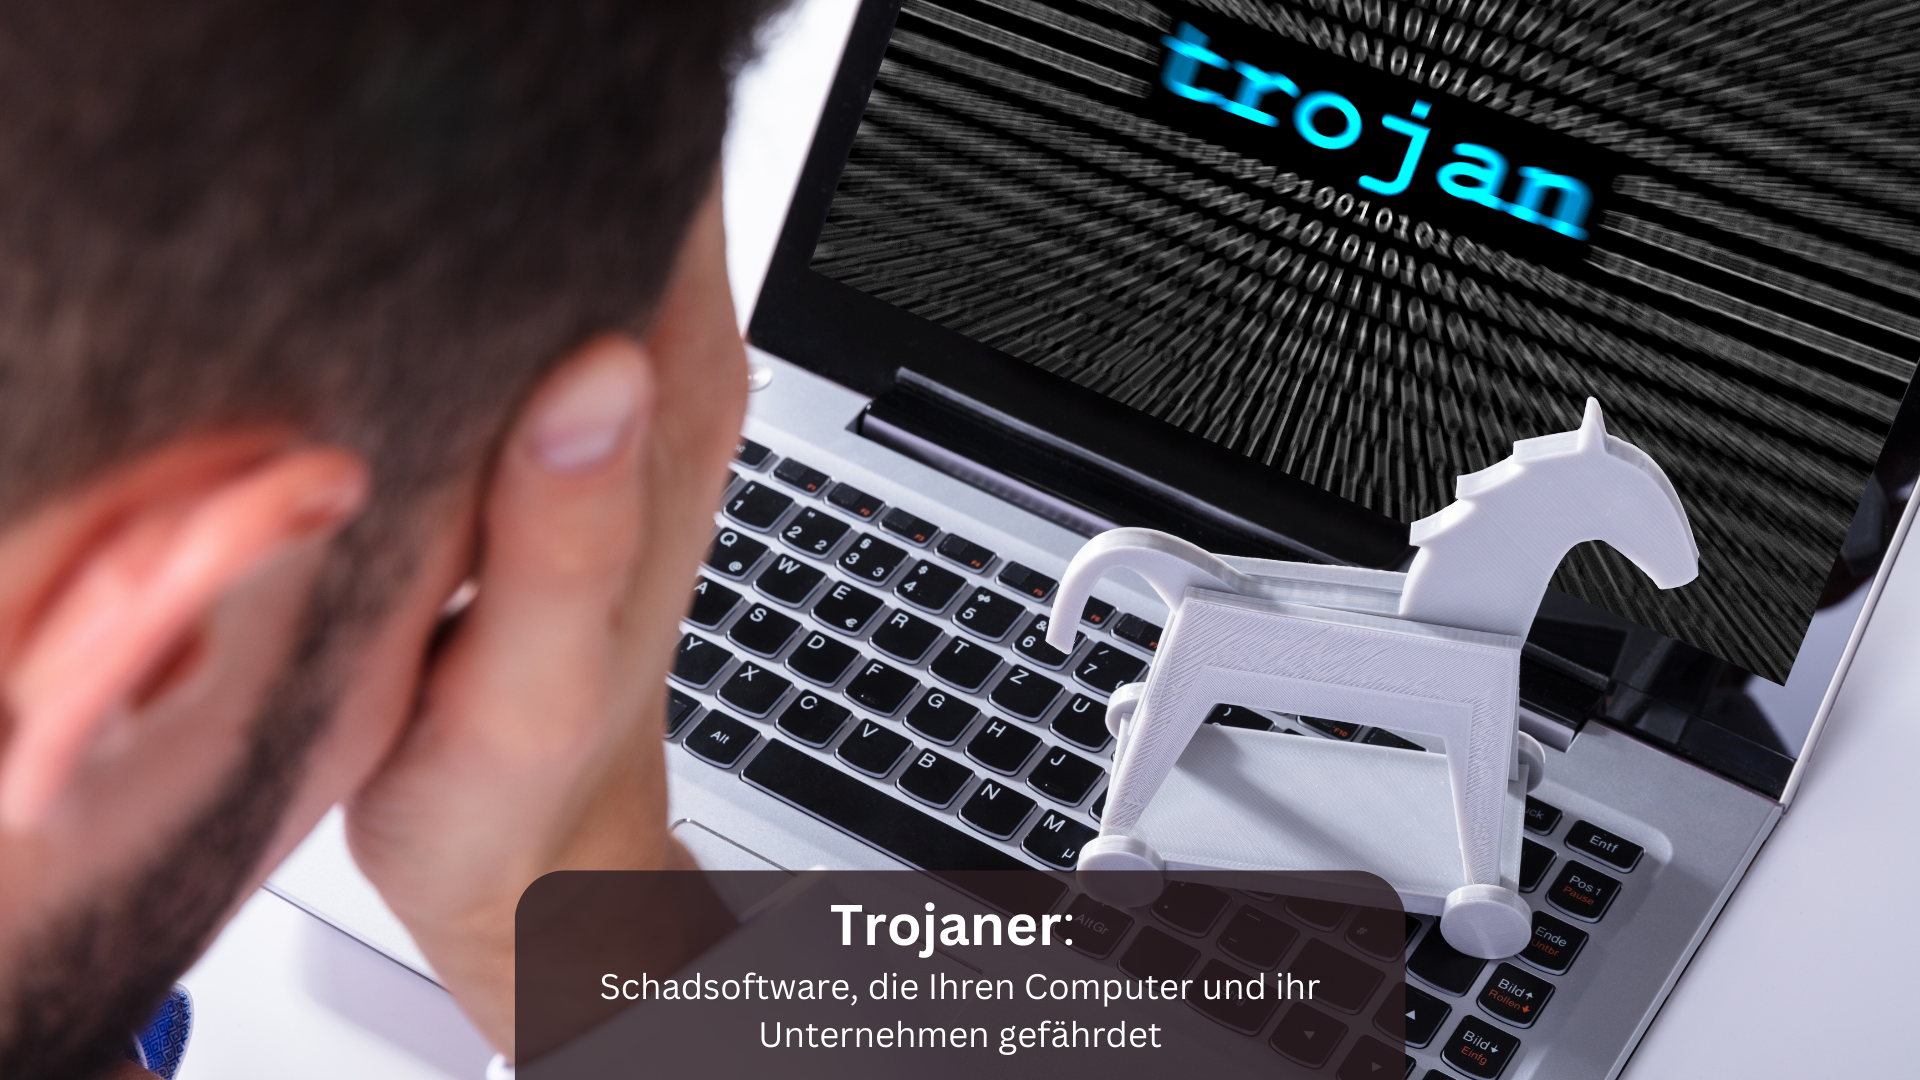 Trojaner: Schadsoftware, die Ihren Computer und ihr Unternehmen gefährdet